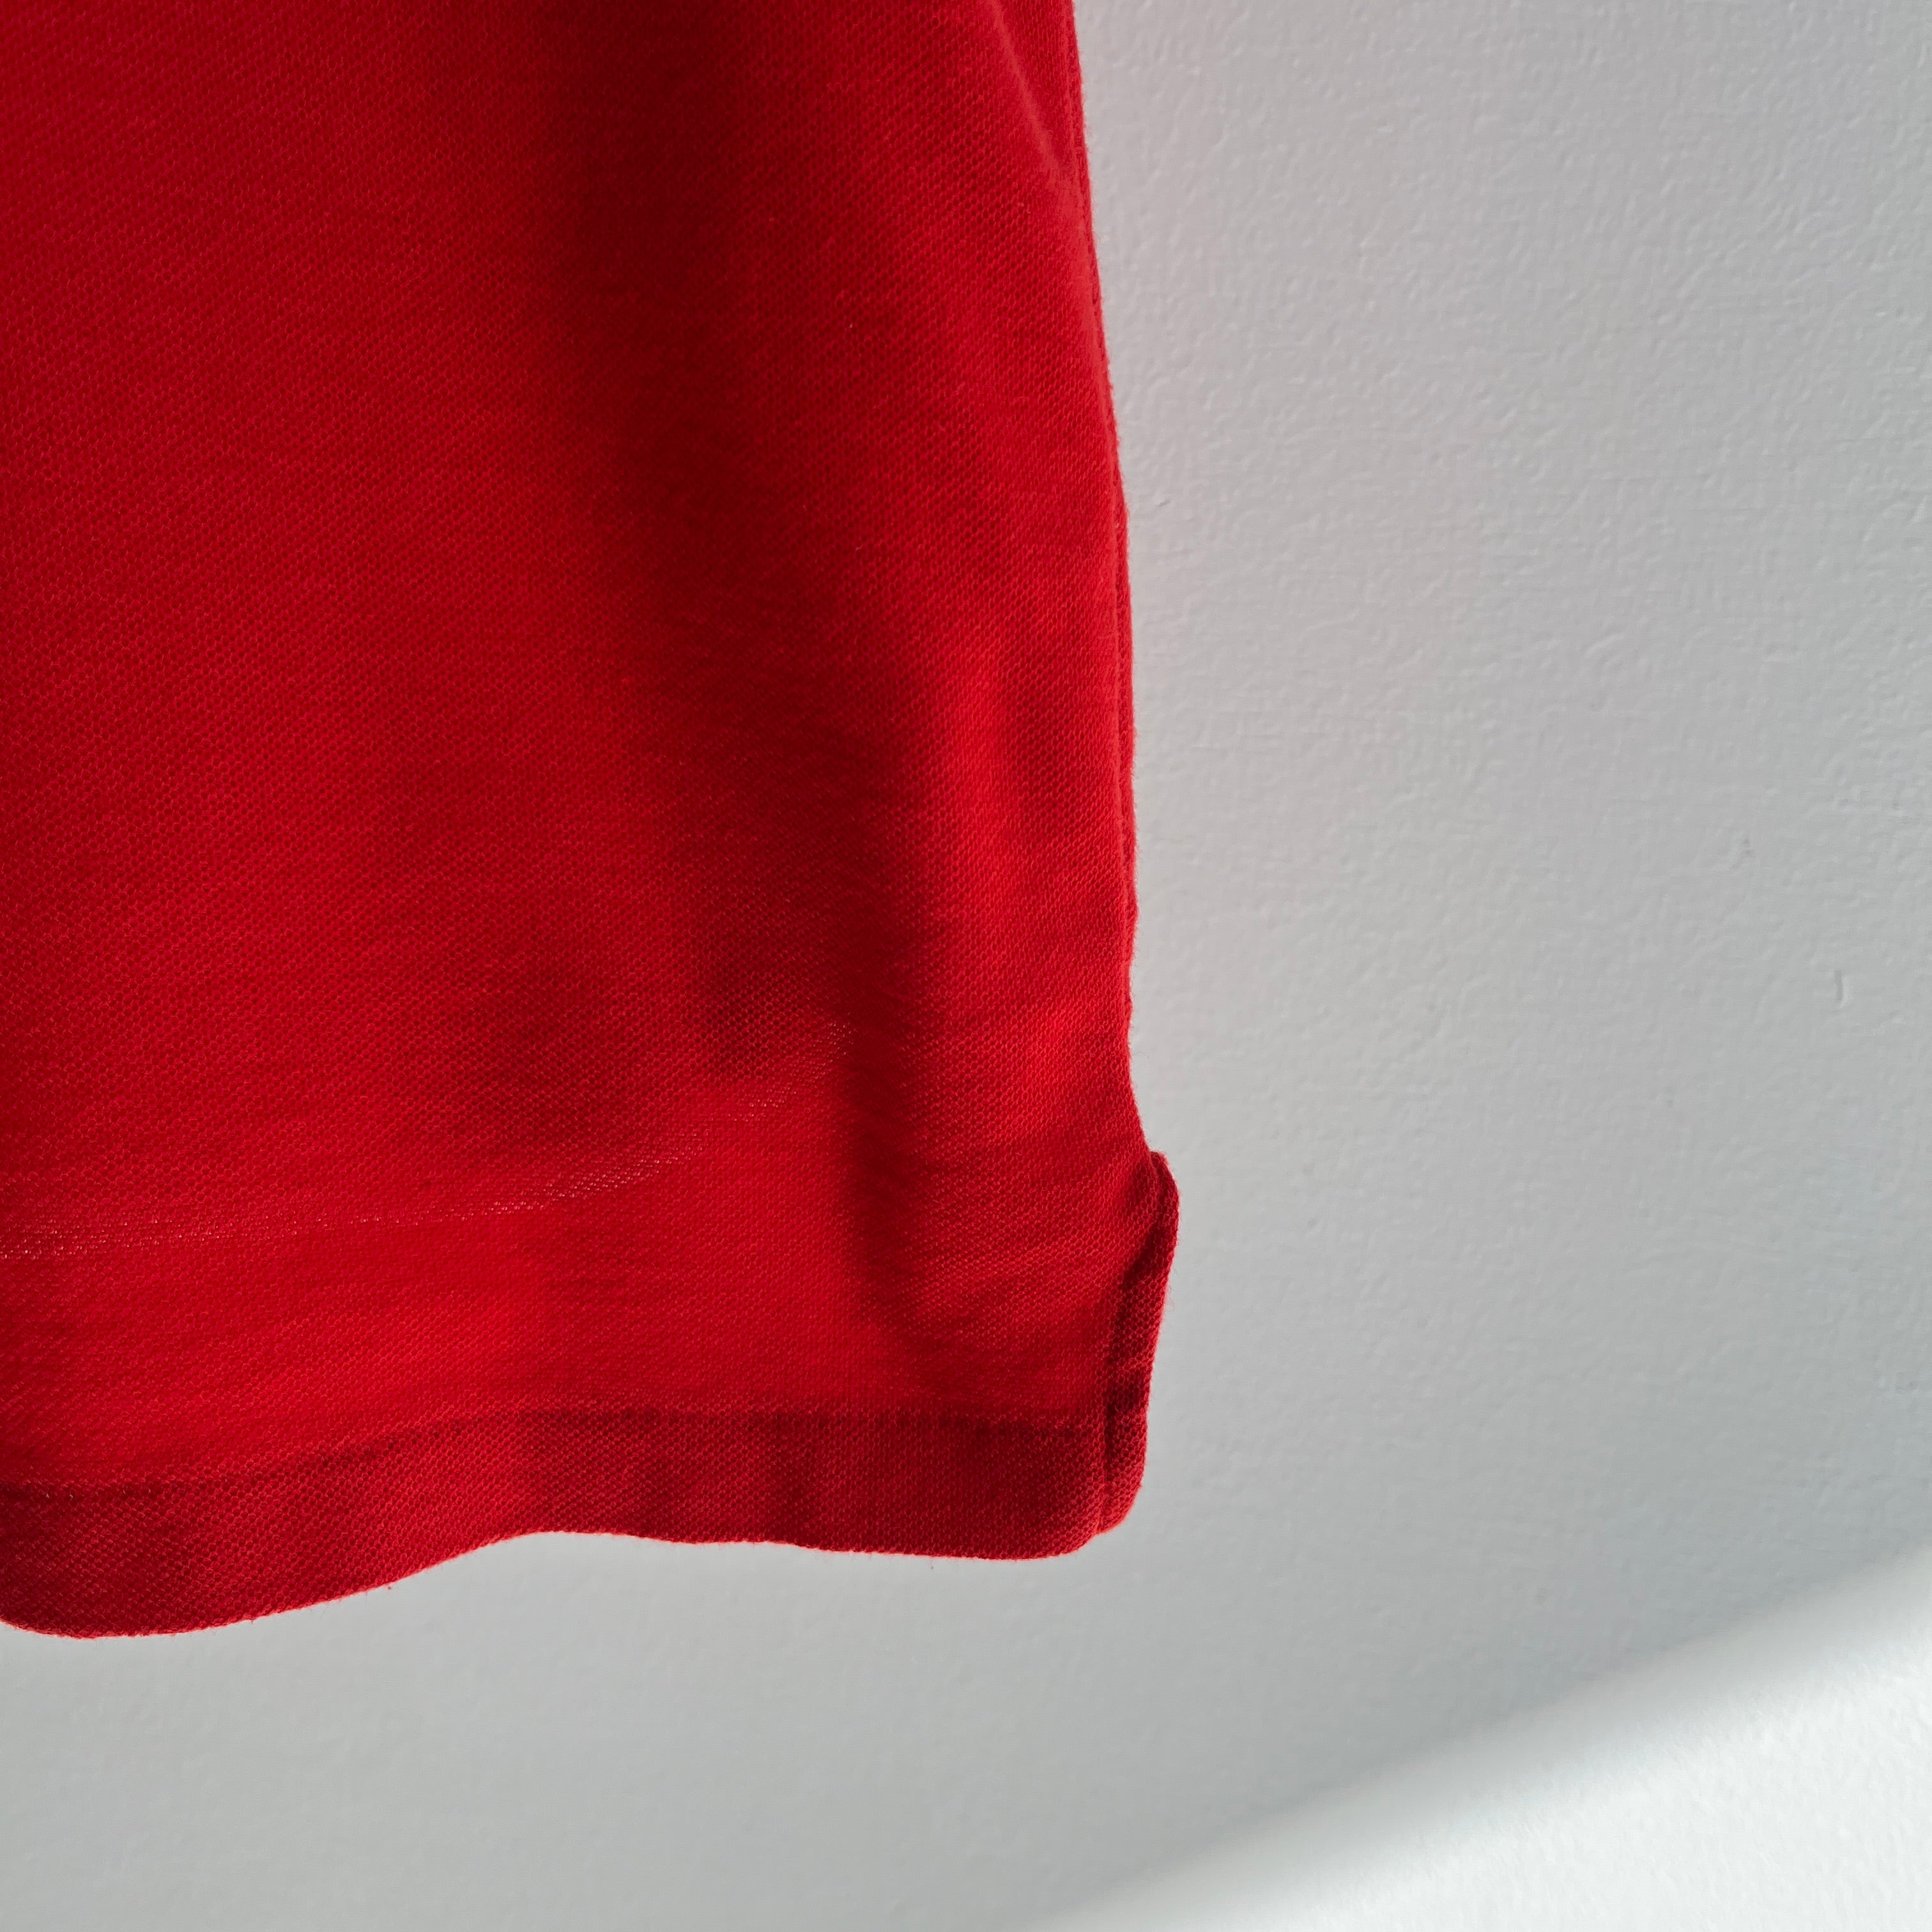 1980s Le Tigre Nail Polish Red Polo Shirt